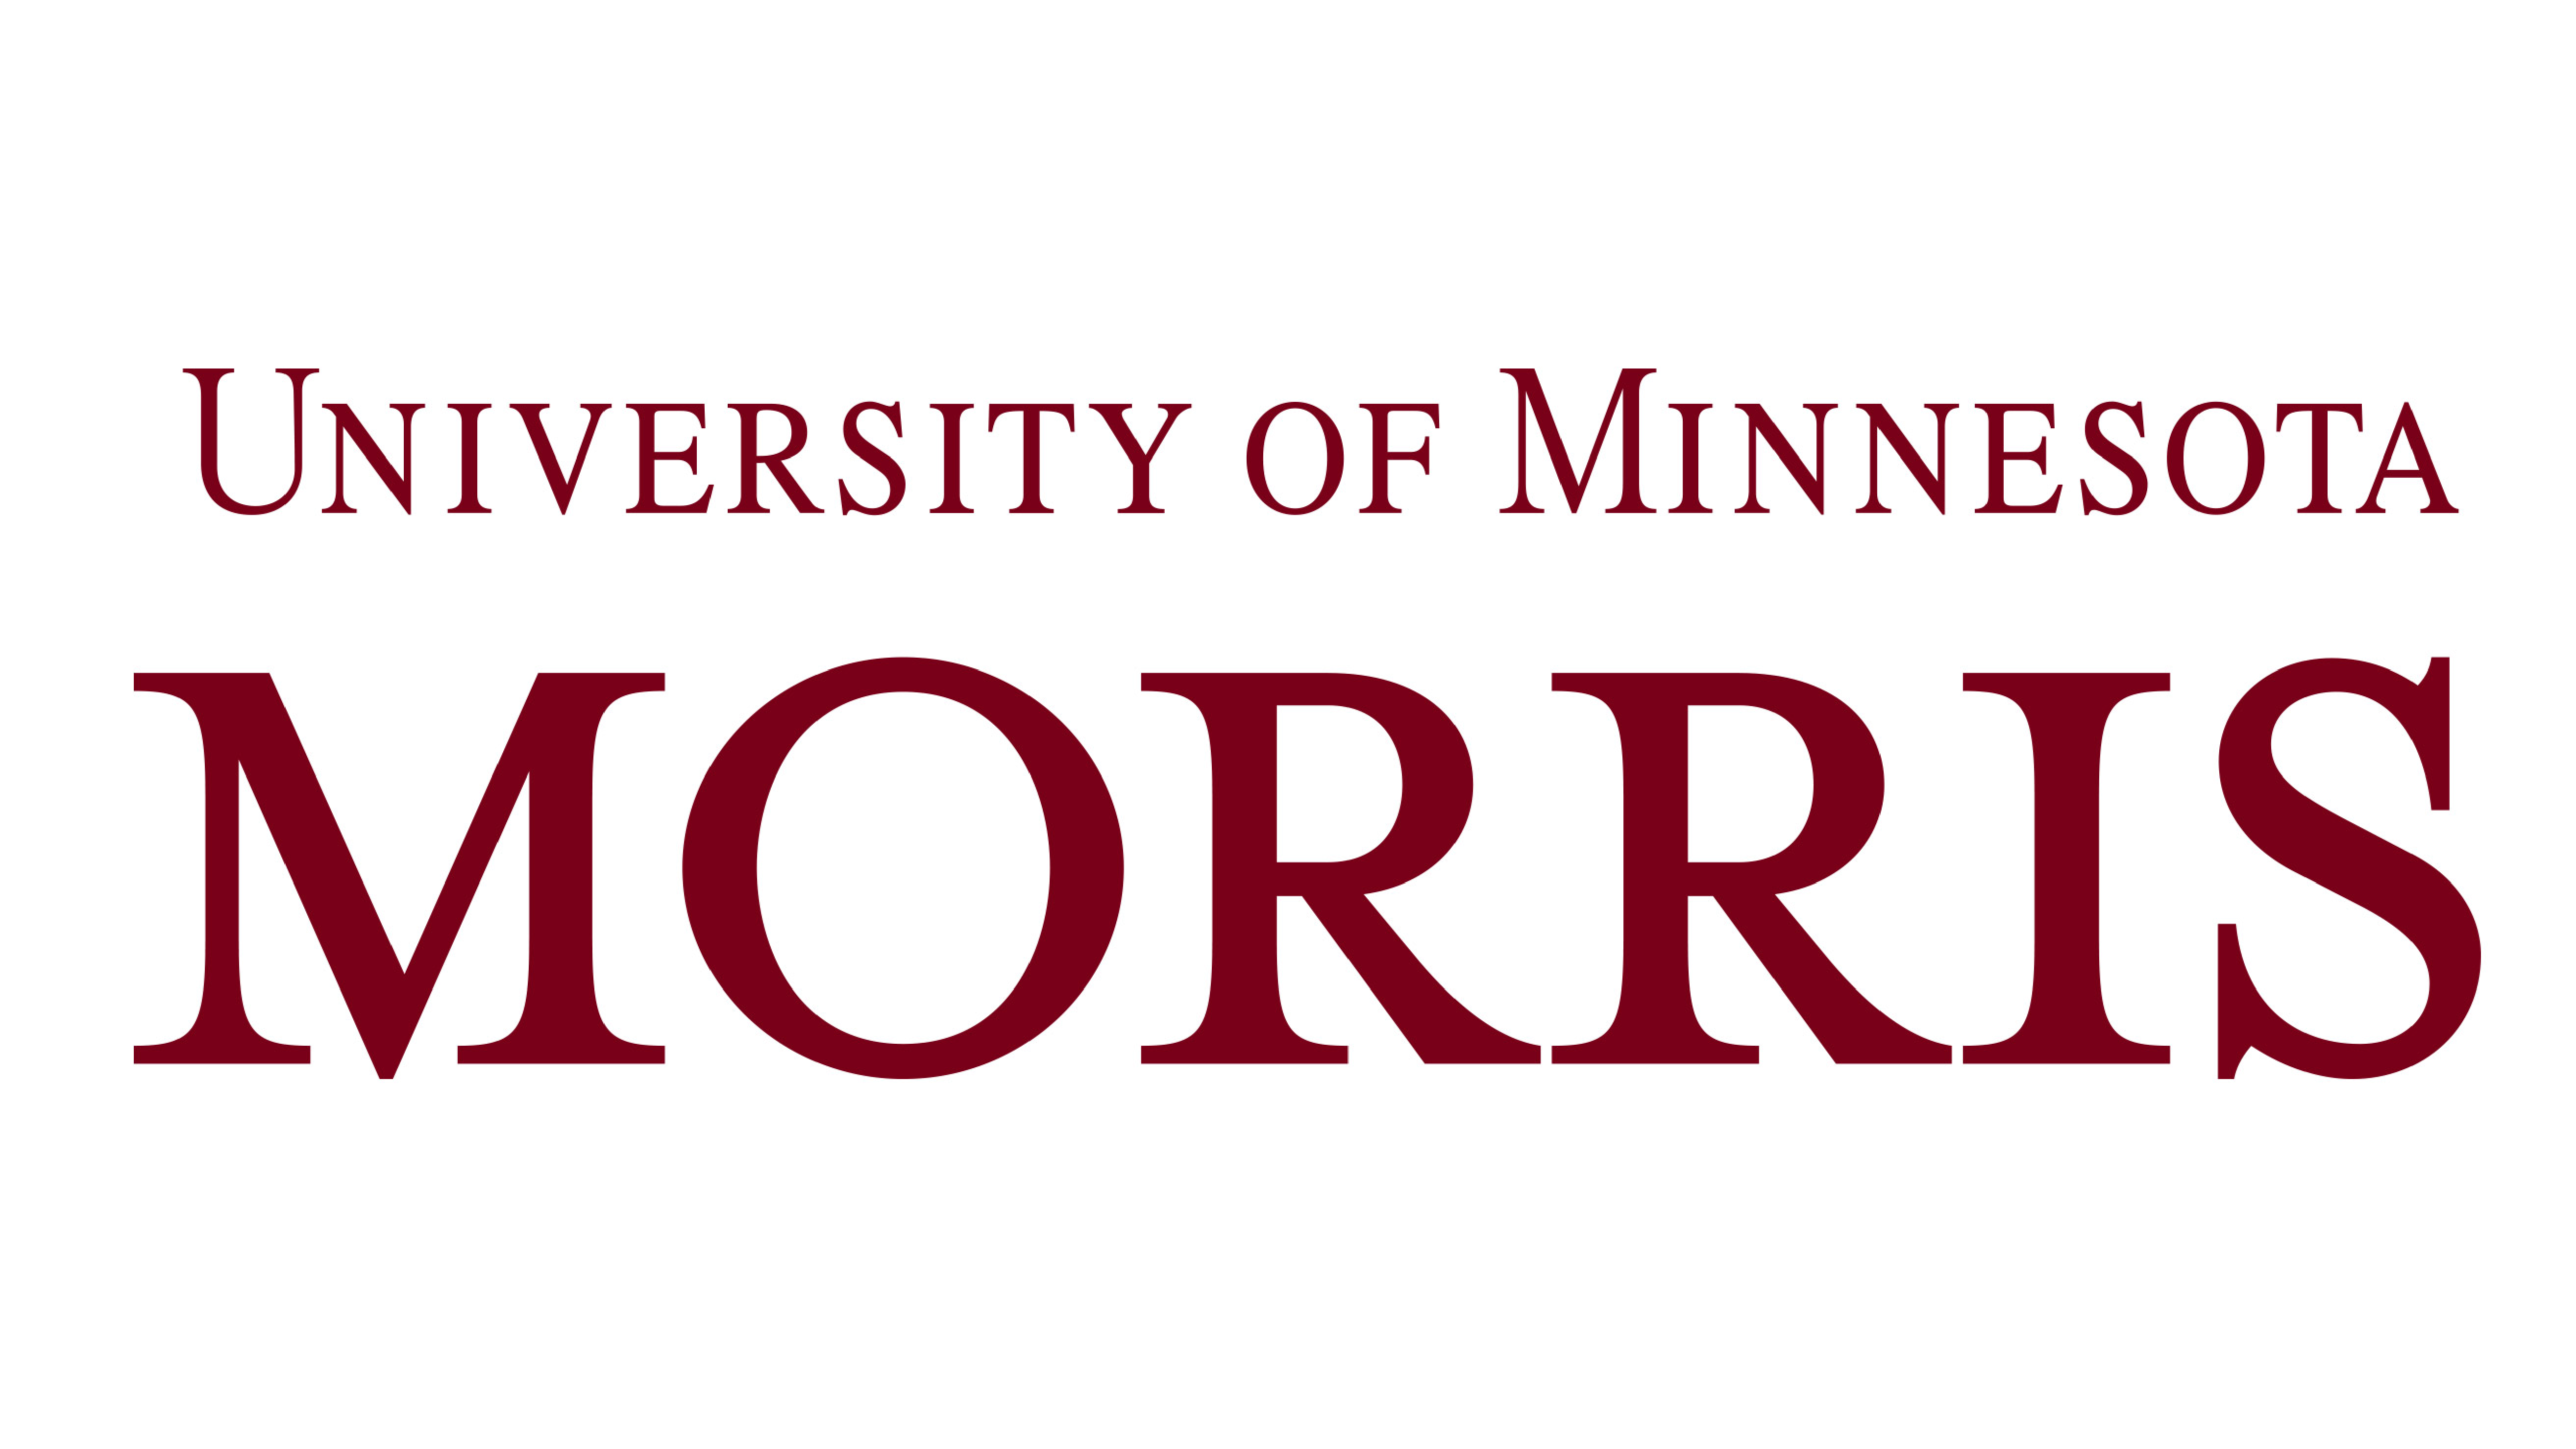 The logo for the University of Minnesota Morris.